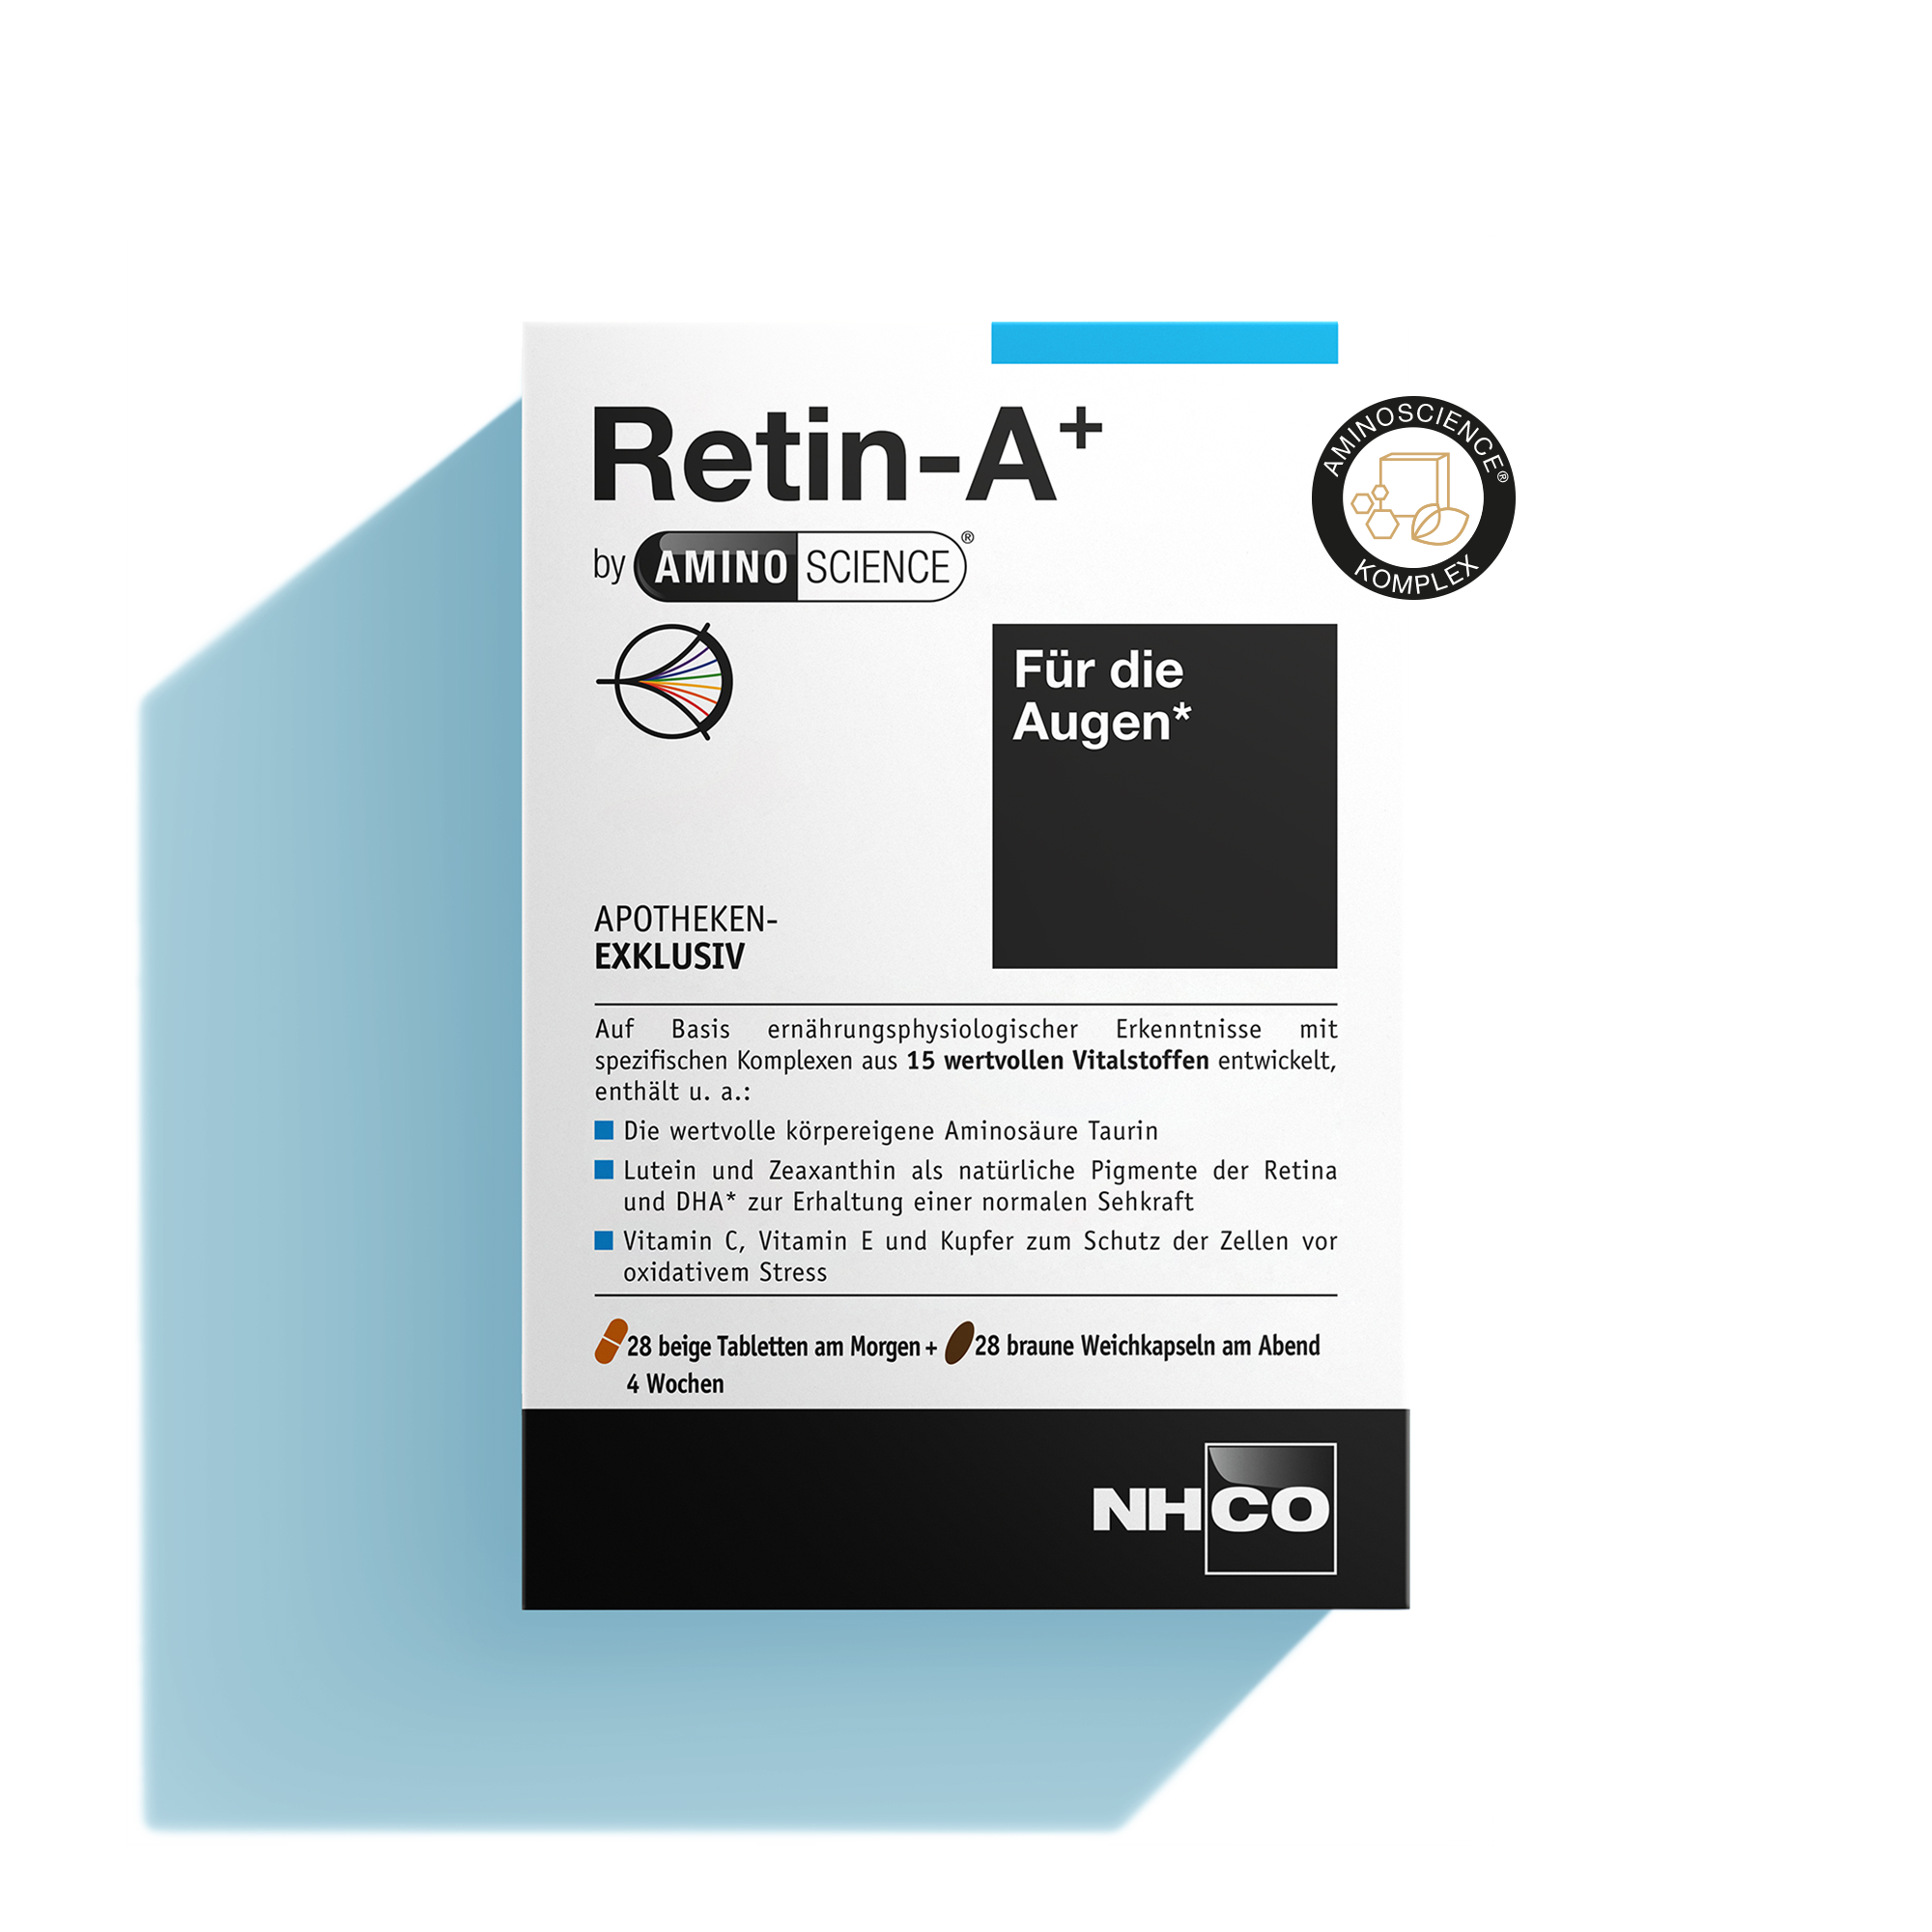 Verpackung von Retin-A+ mit AminoScience® Komplex, für die Augen, enthält Aminosäuren und Vitamine.